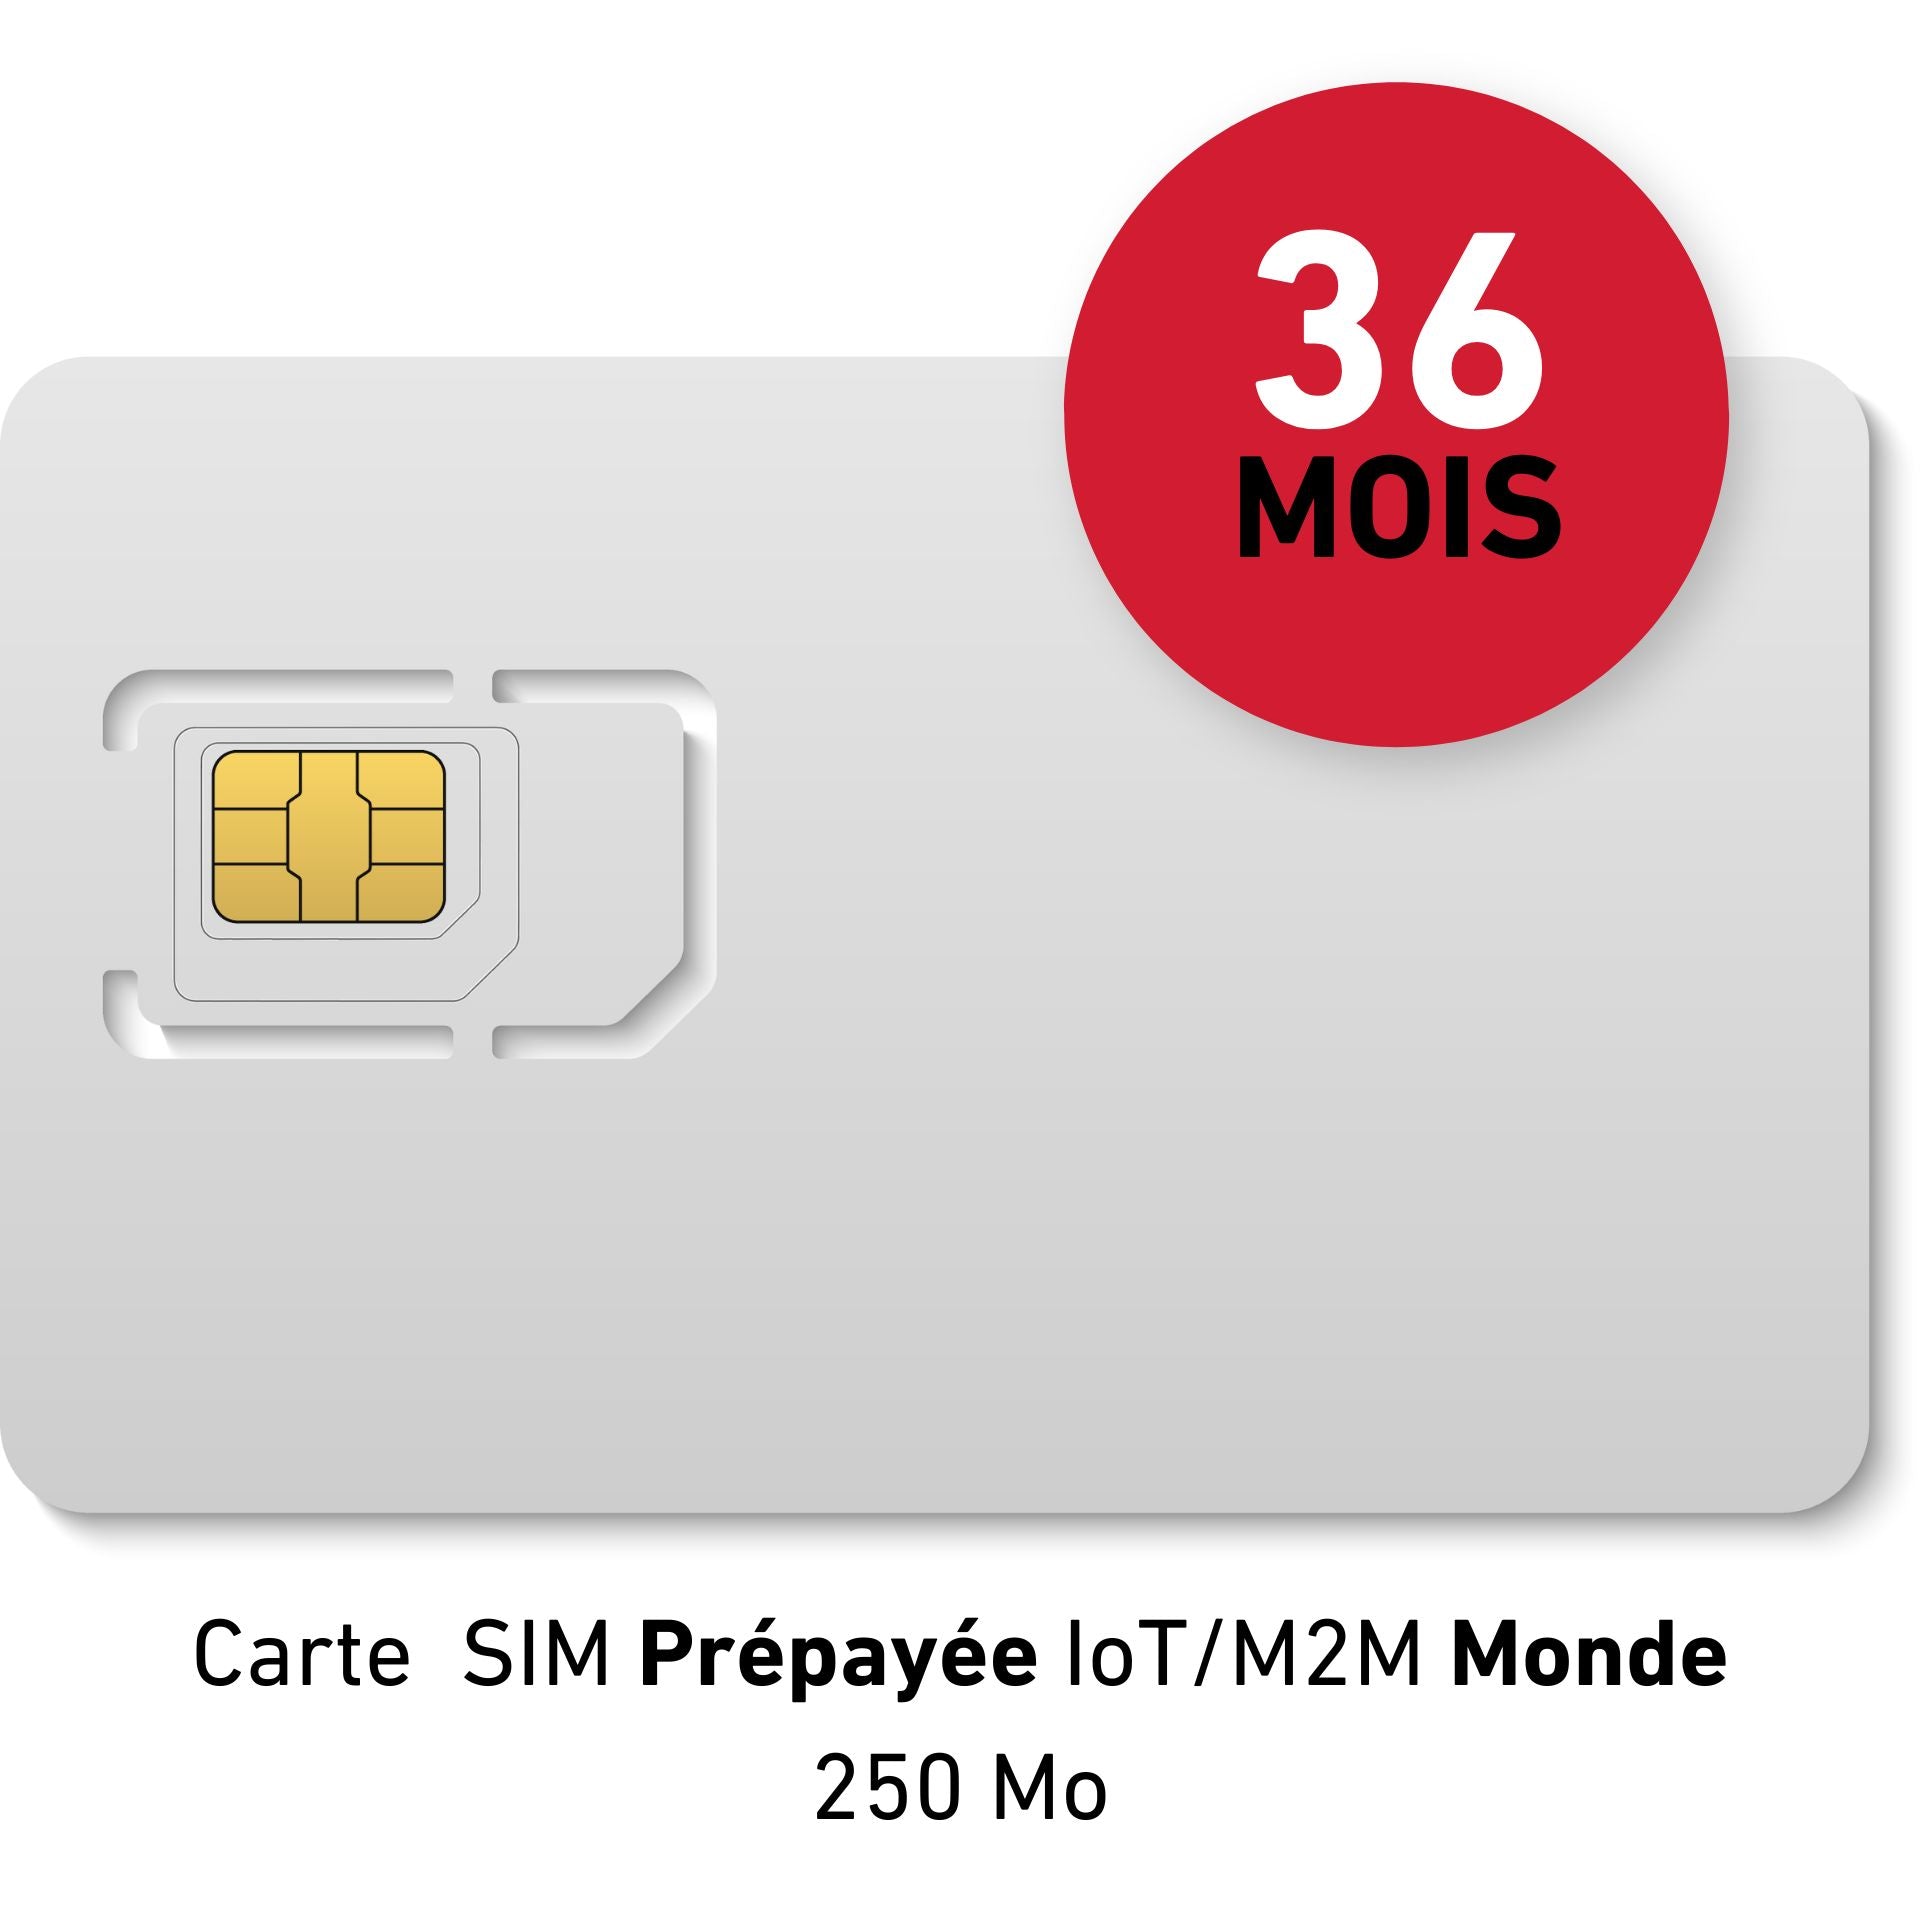 Carte SIM Prépayée IoT/M2M Monde - 35 € HT - 250Mb data - Validité 36 MOIS